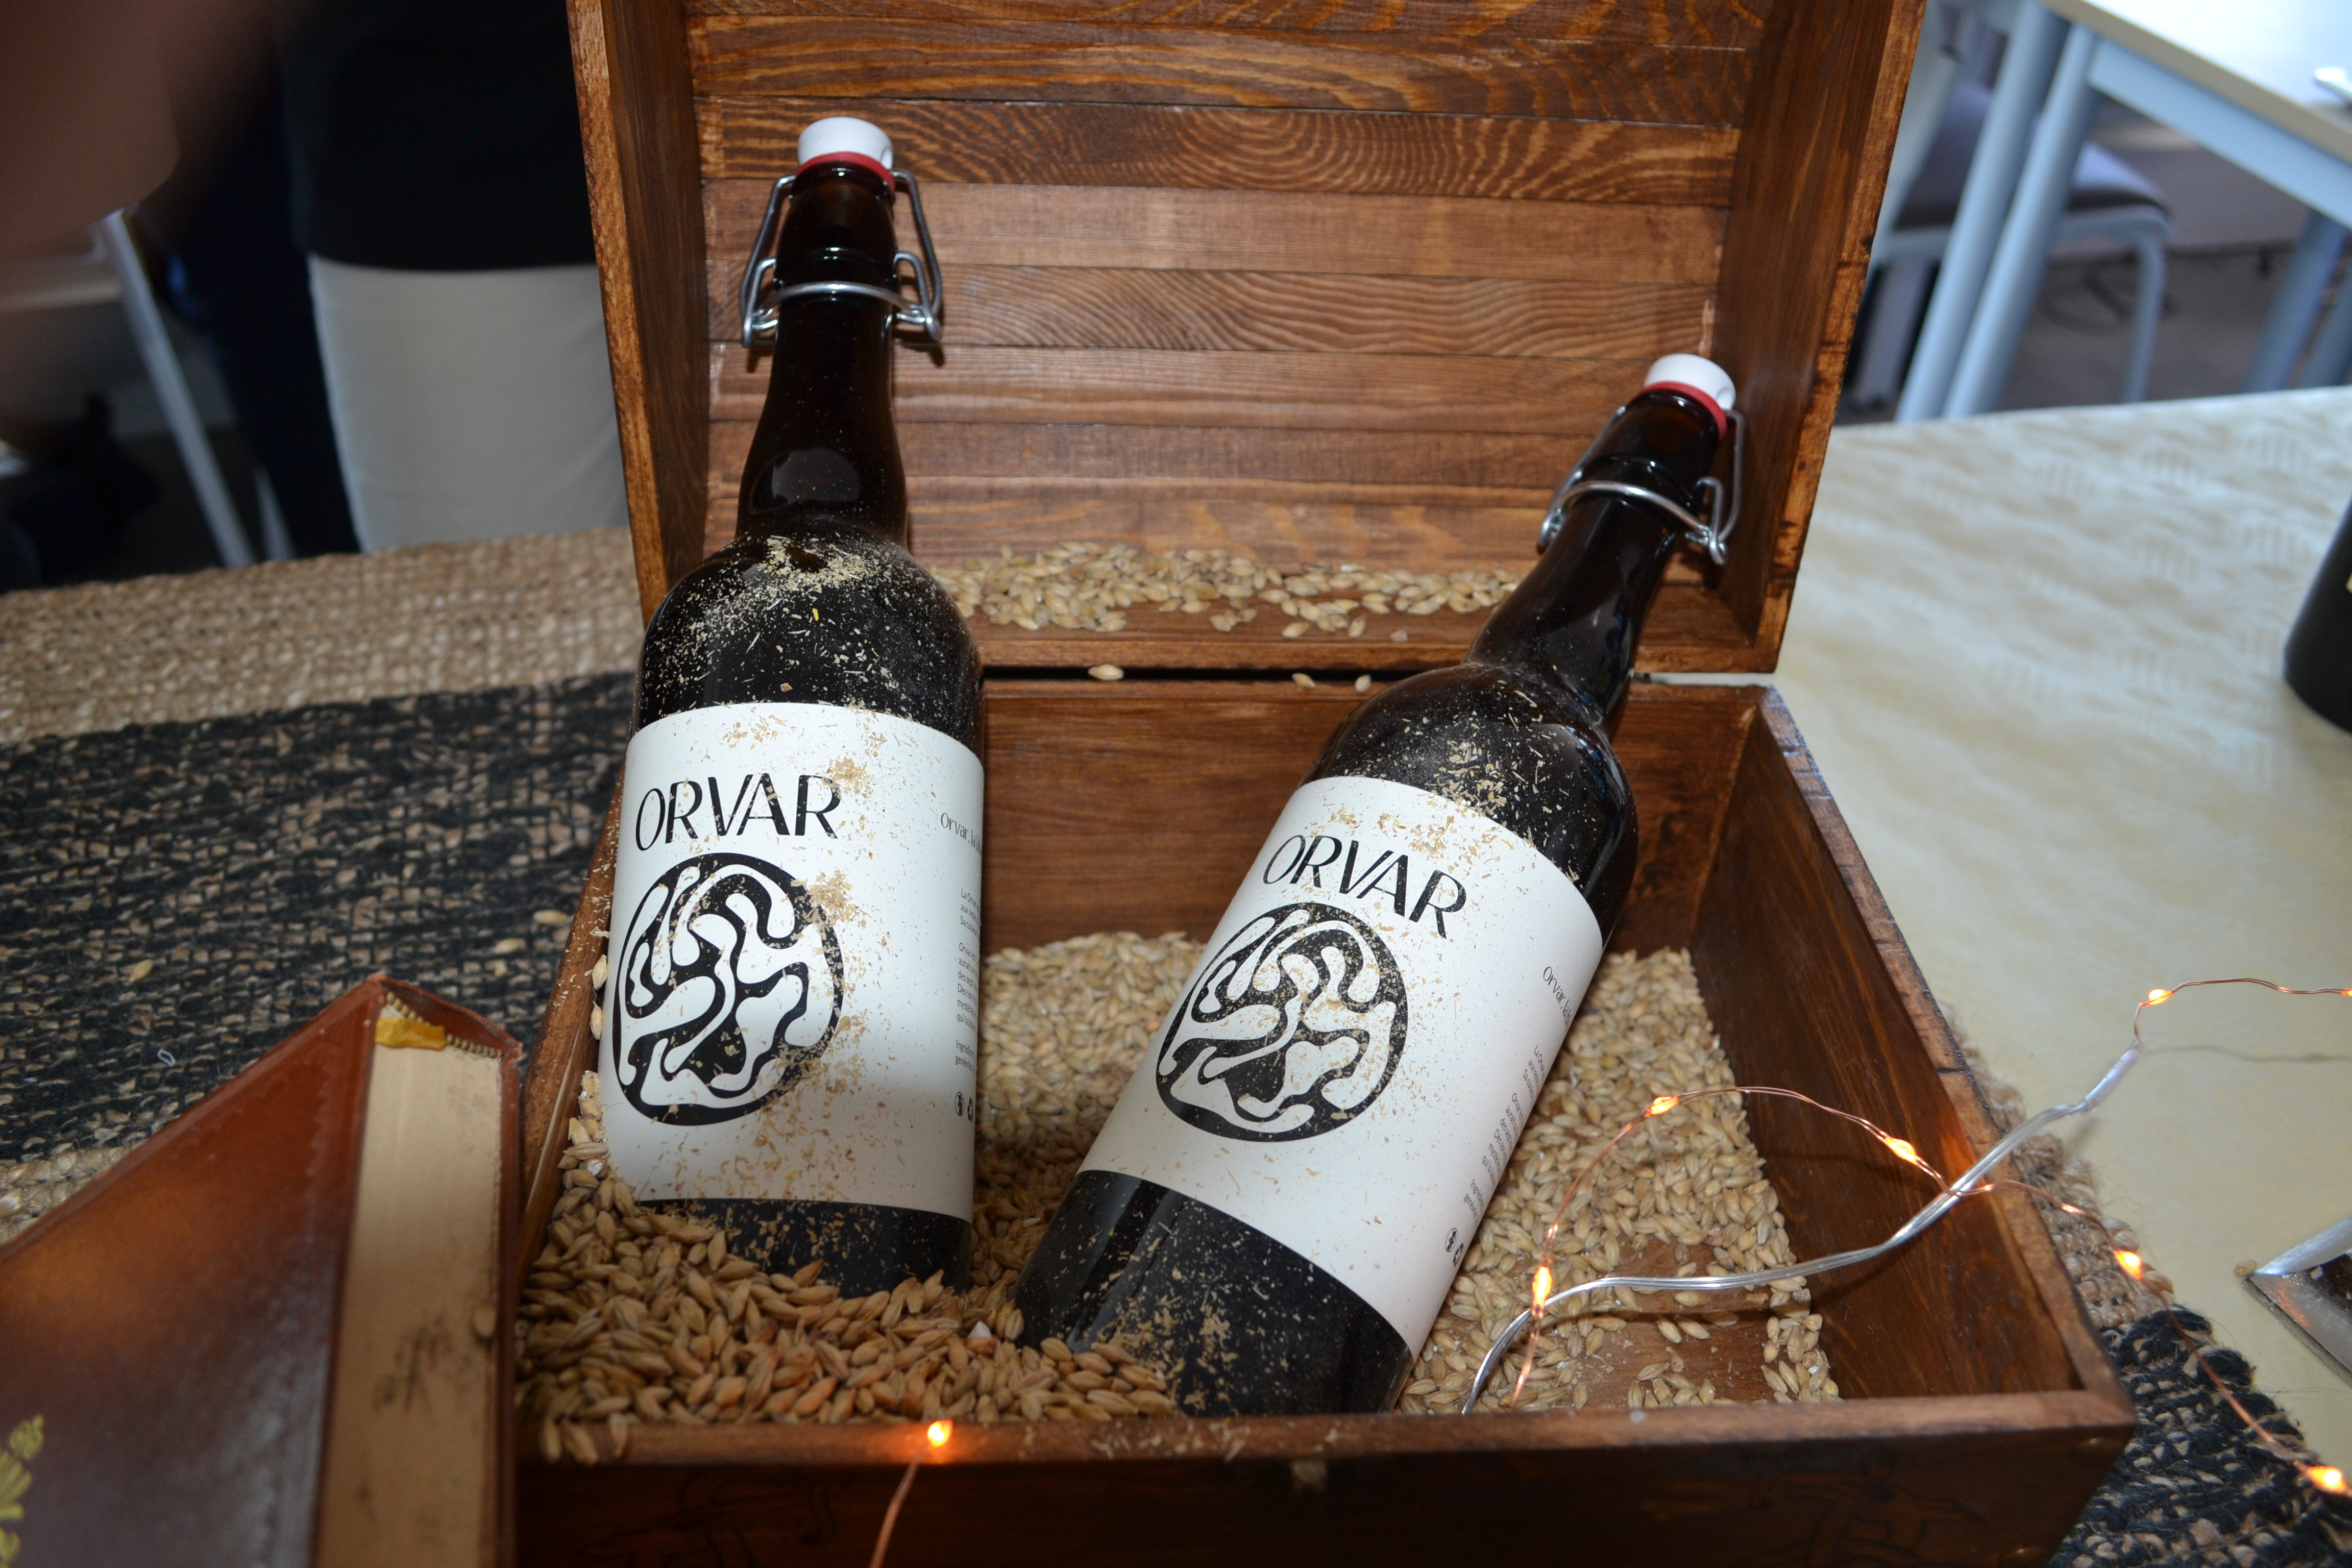 Bière en exposition dans leurs thème (Orvar)